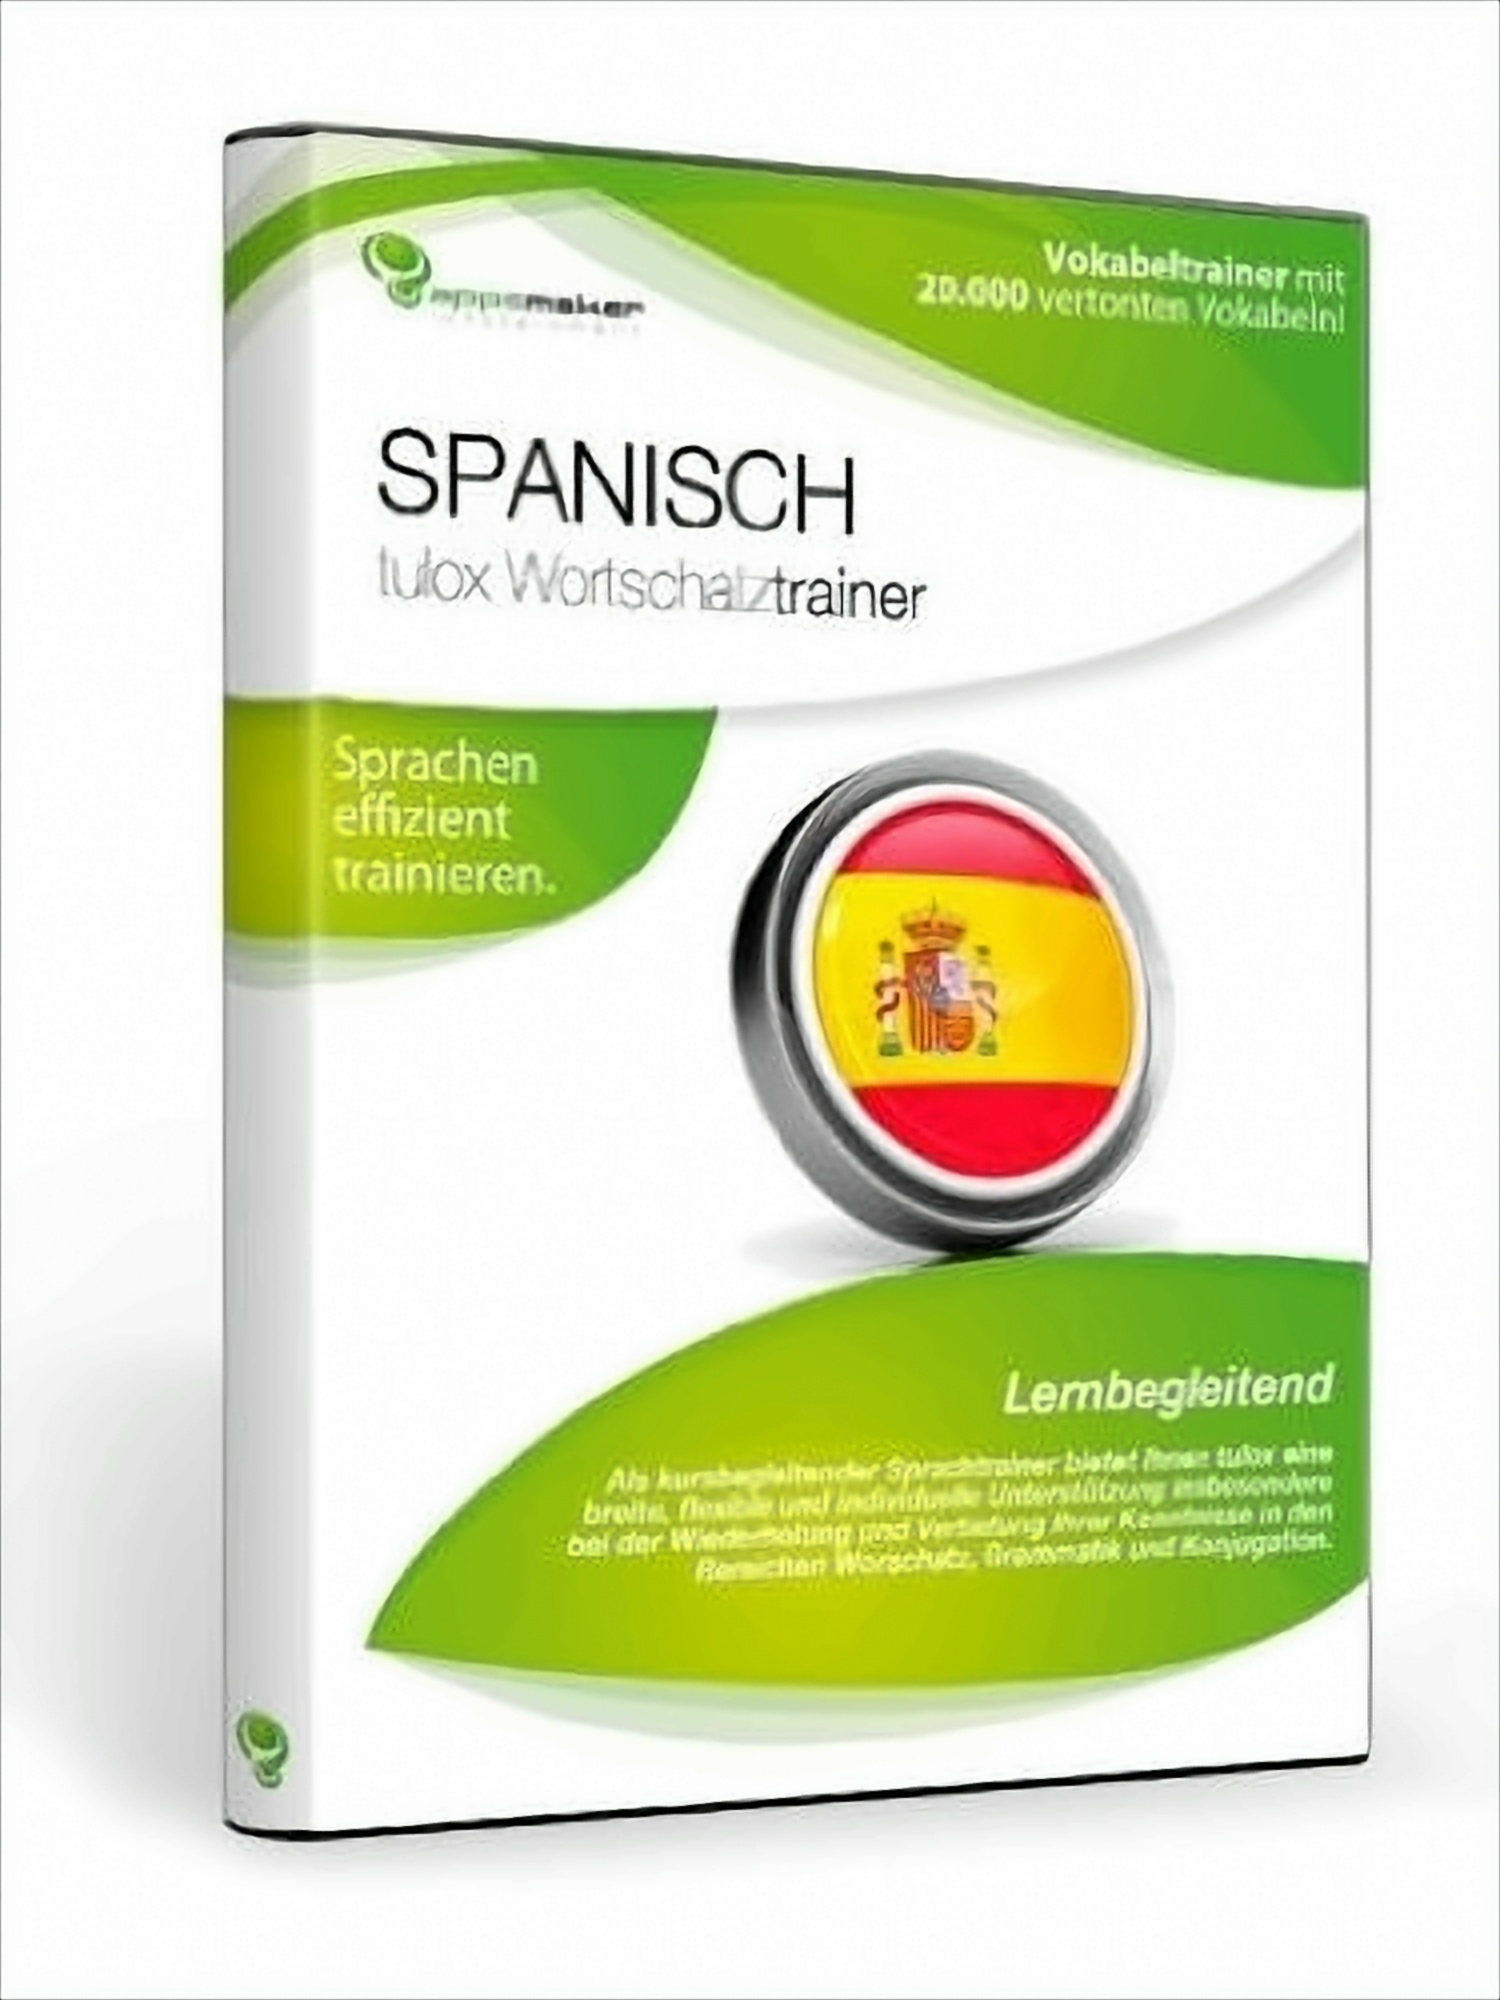 tulox Wortschatztrainer Spanisch von appsmaker